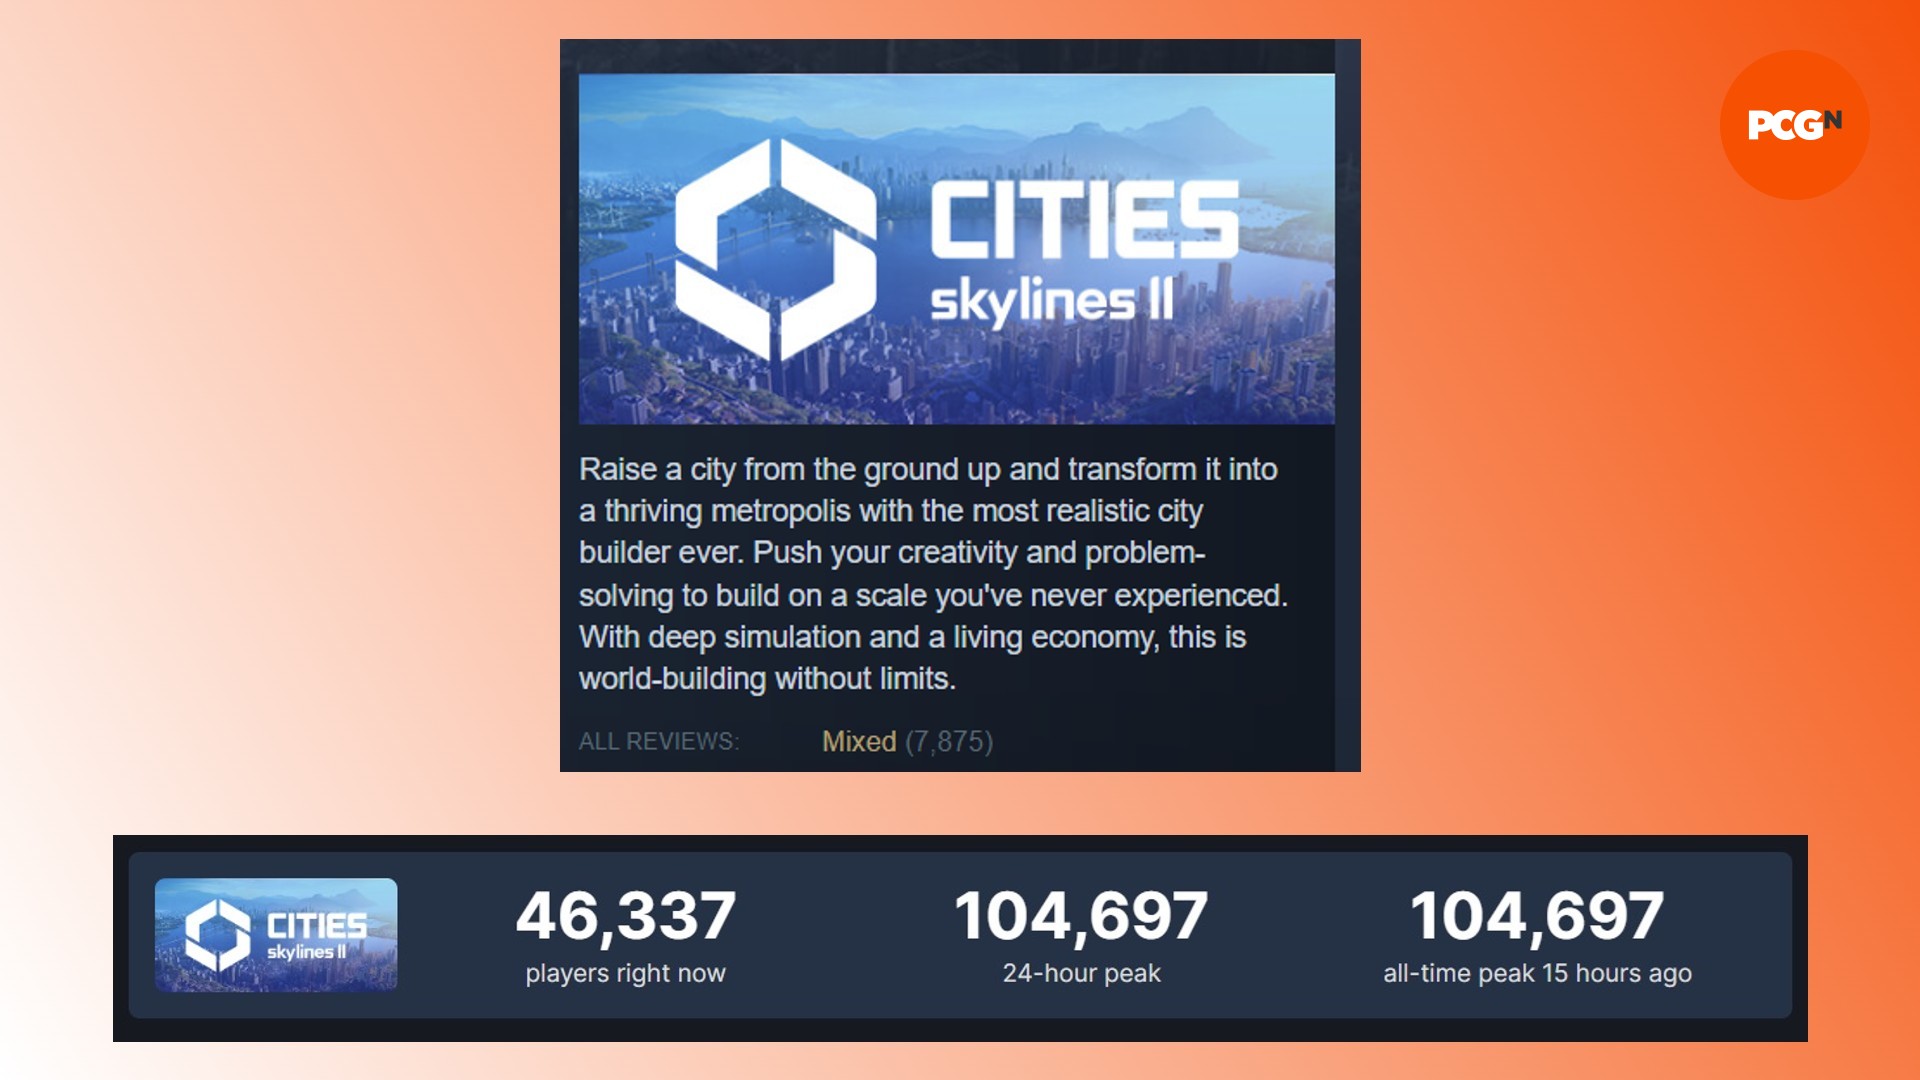 Reseñas de Cities Skylines 2 Steam: una comparación de las estadísticas de Cities Skylines 2 Steam